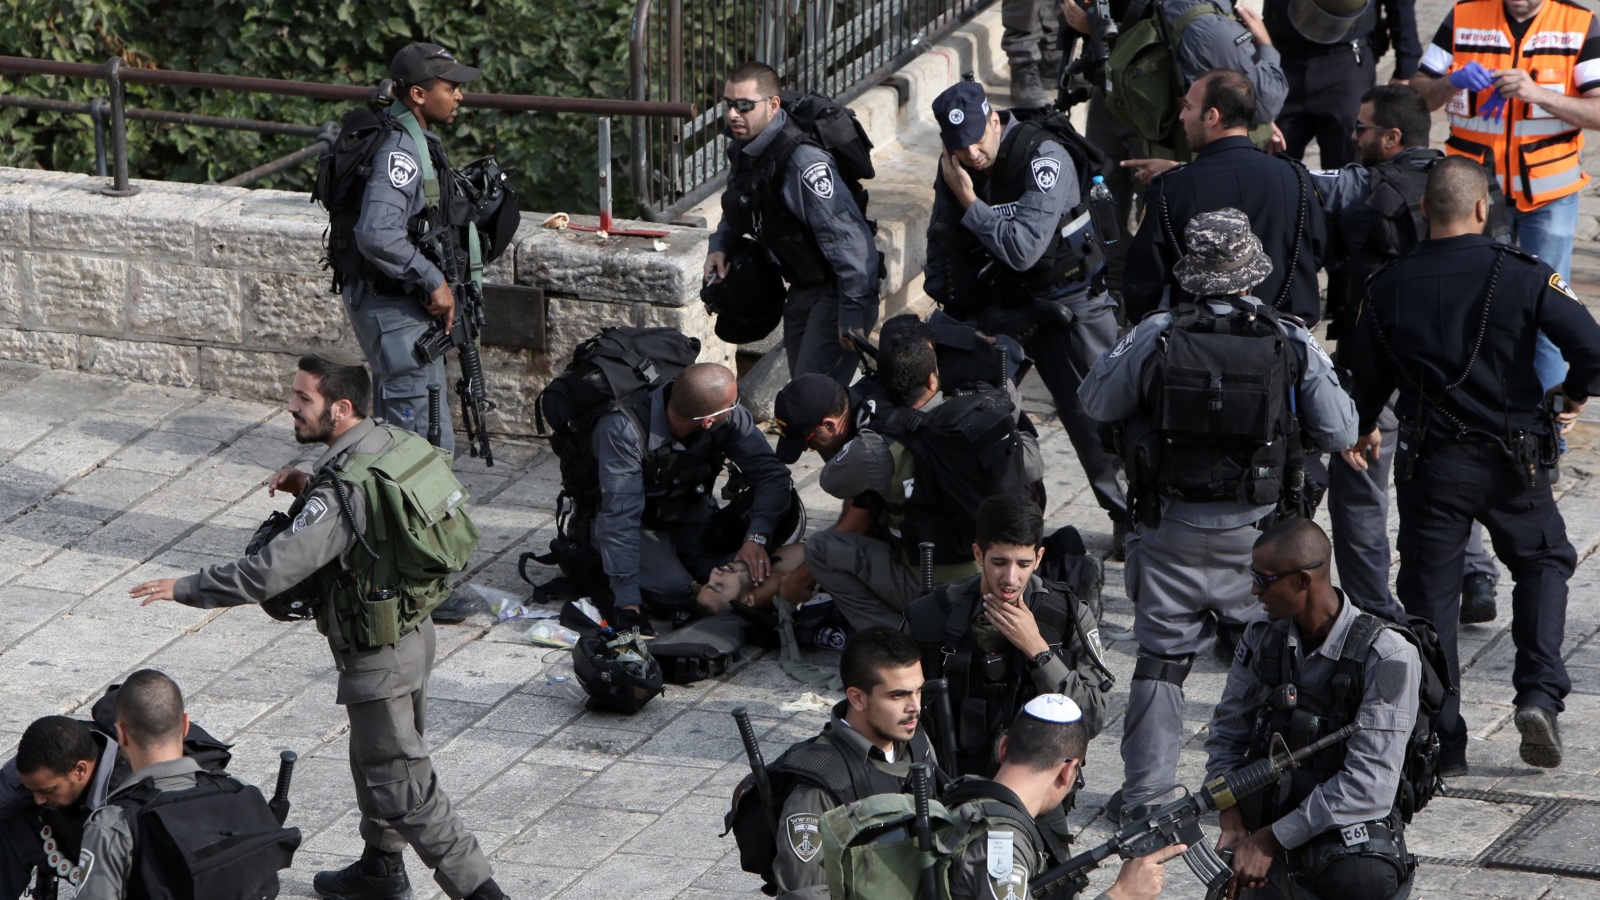 ‪جنود الاحتلال يسعفون أحد جرحاهم في القدس‬ جنود الاحتلال يسعفون أحد جرحاهم في القدس (الفرنسية)